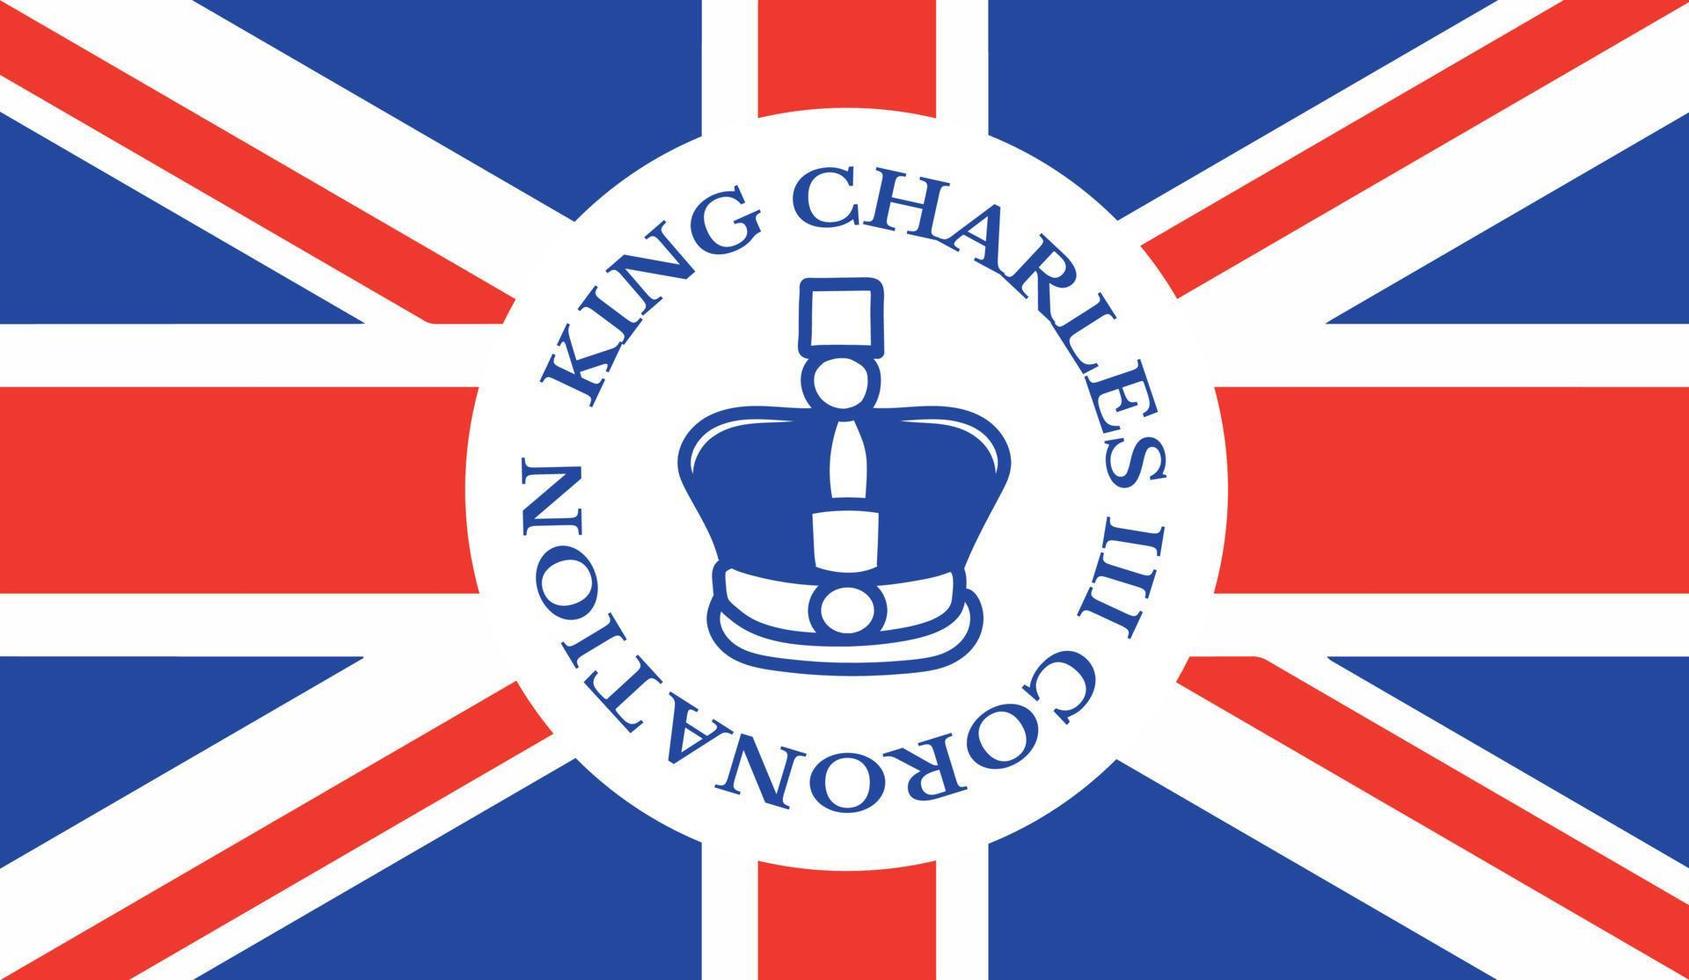 afiche para la coronación del rey carlos iii con la ilustración del vector de la bandera británica.